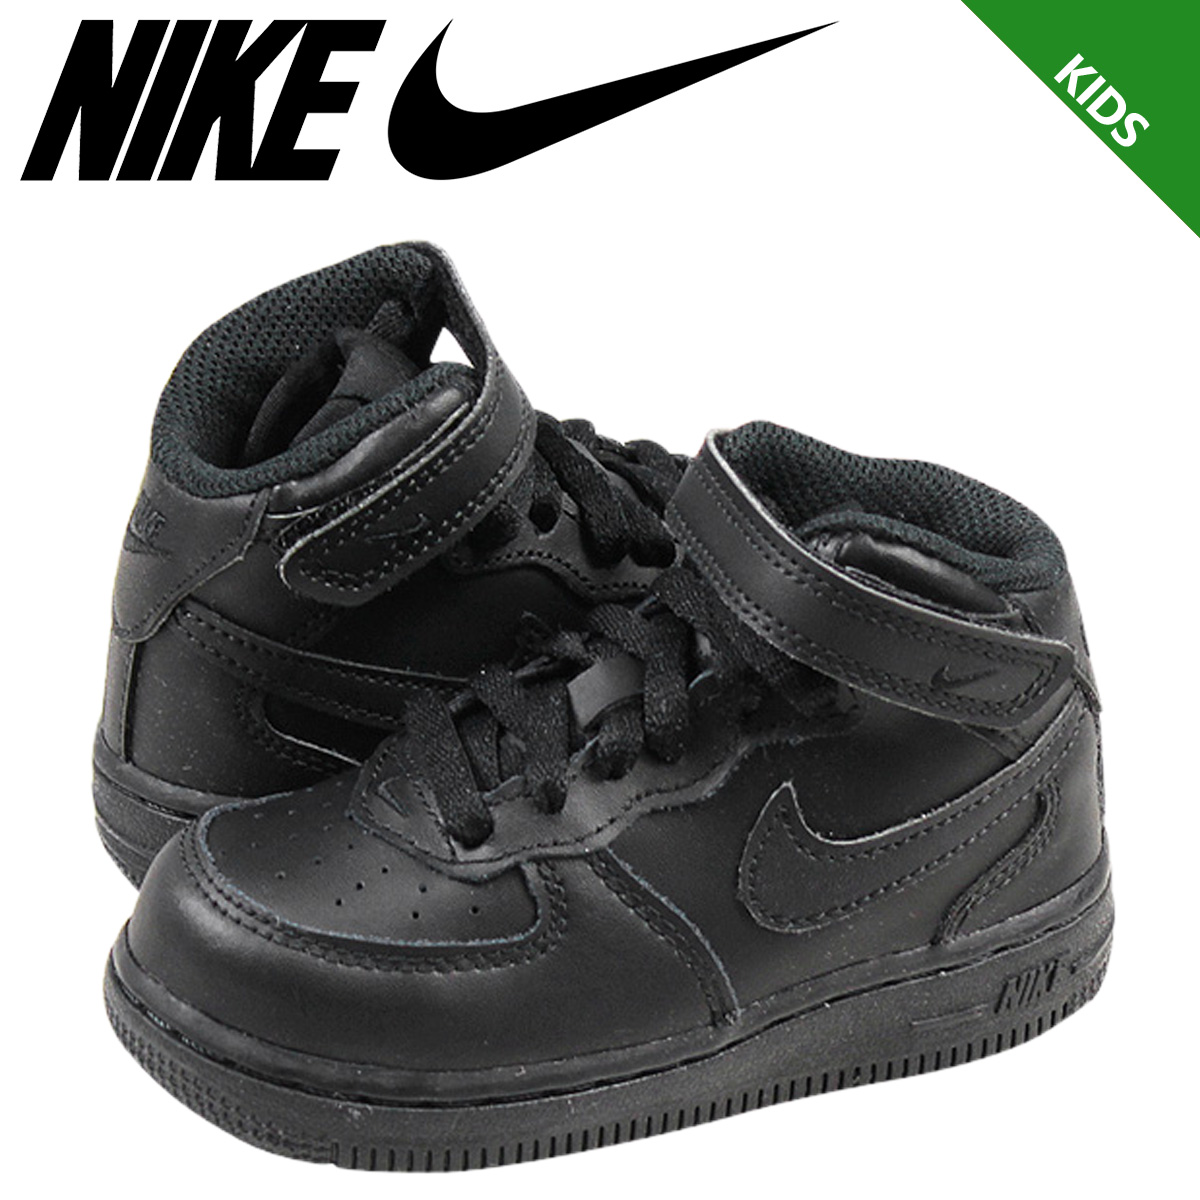 Sugar Online Shop: NIKE Nike air force sneakers baby kids AIR FORCE 1 MID TD air force 1 mid ...